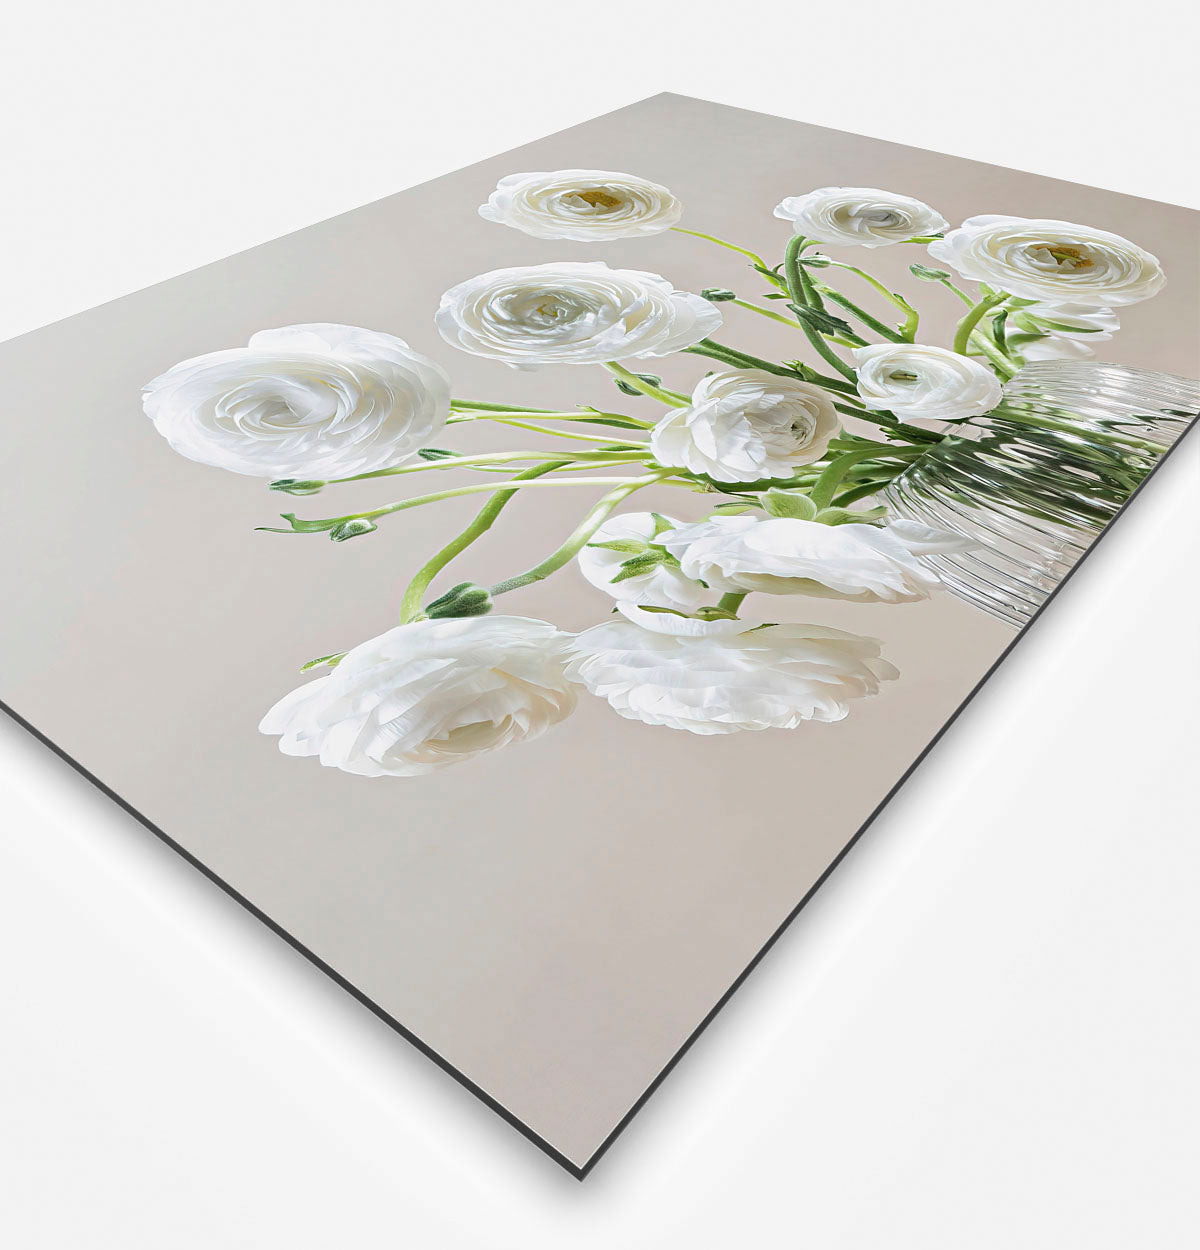 Zijkant van een schilderij met een glazen vaas met witte bloemen